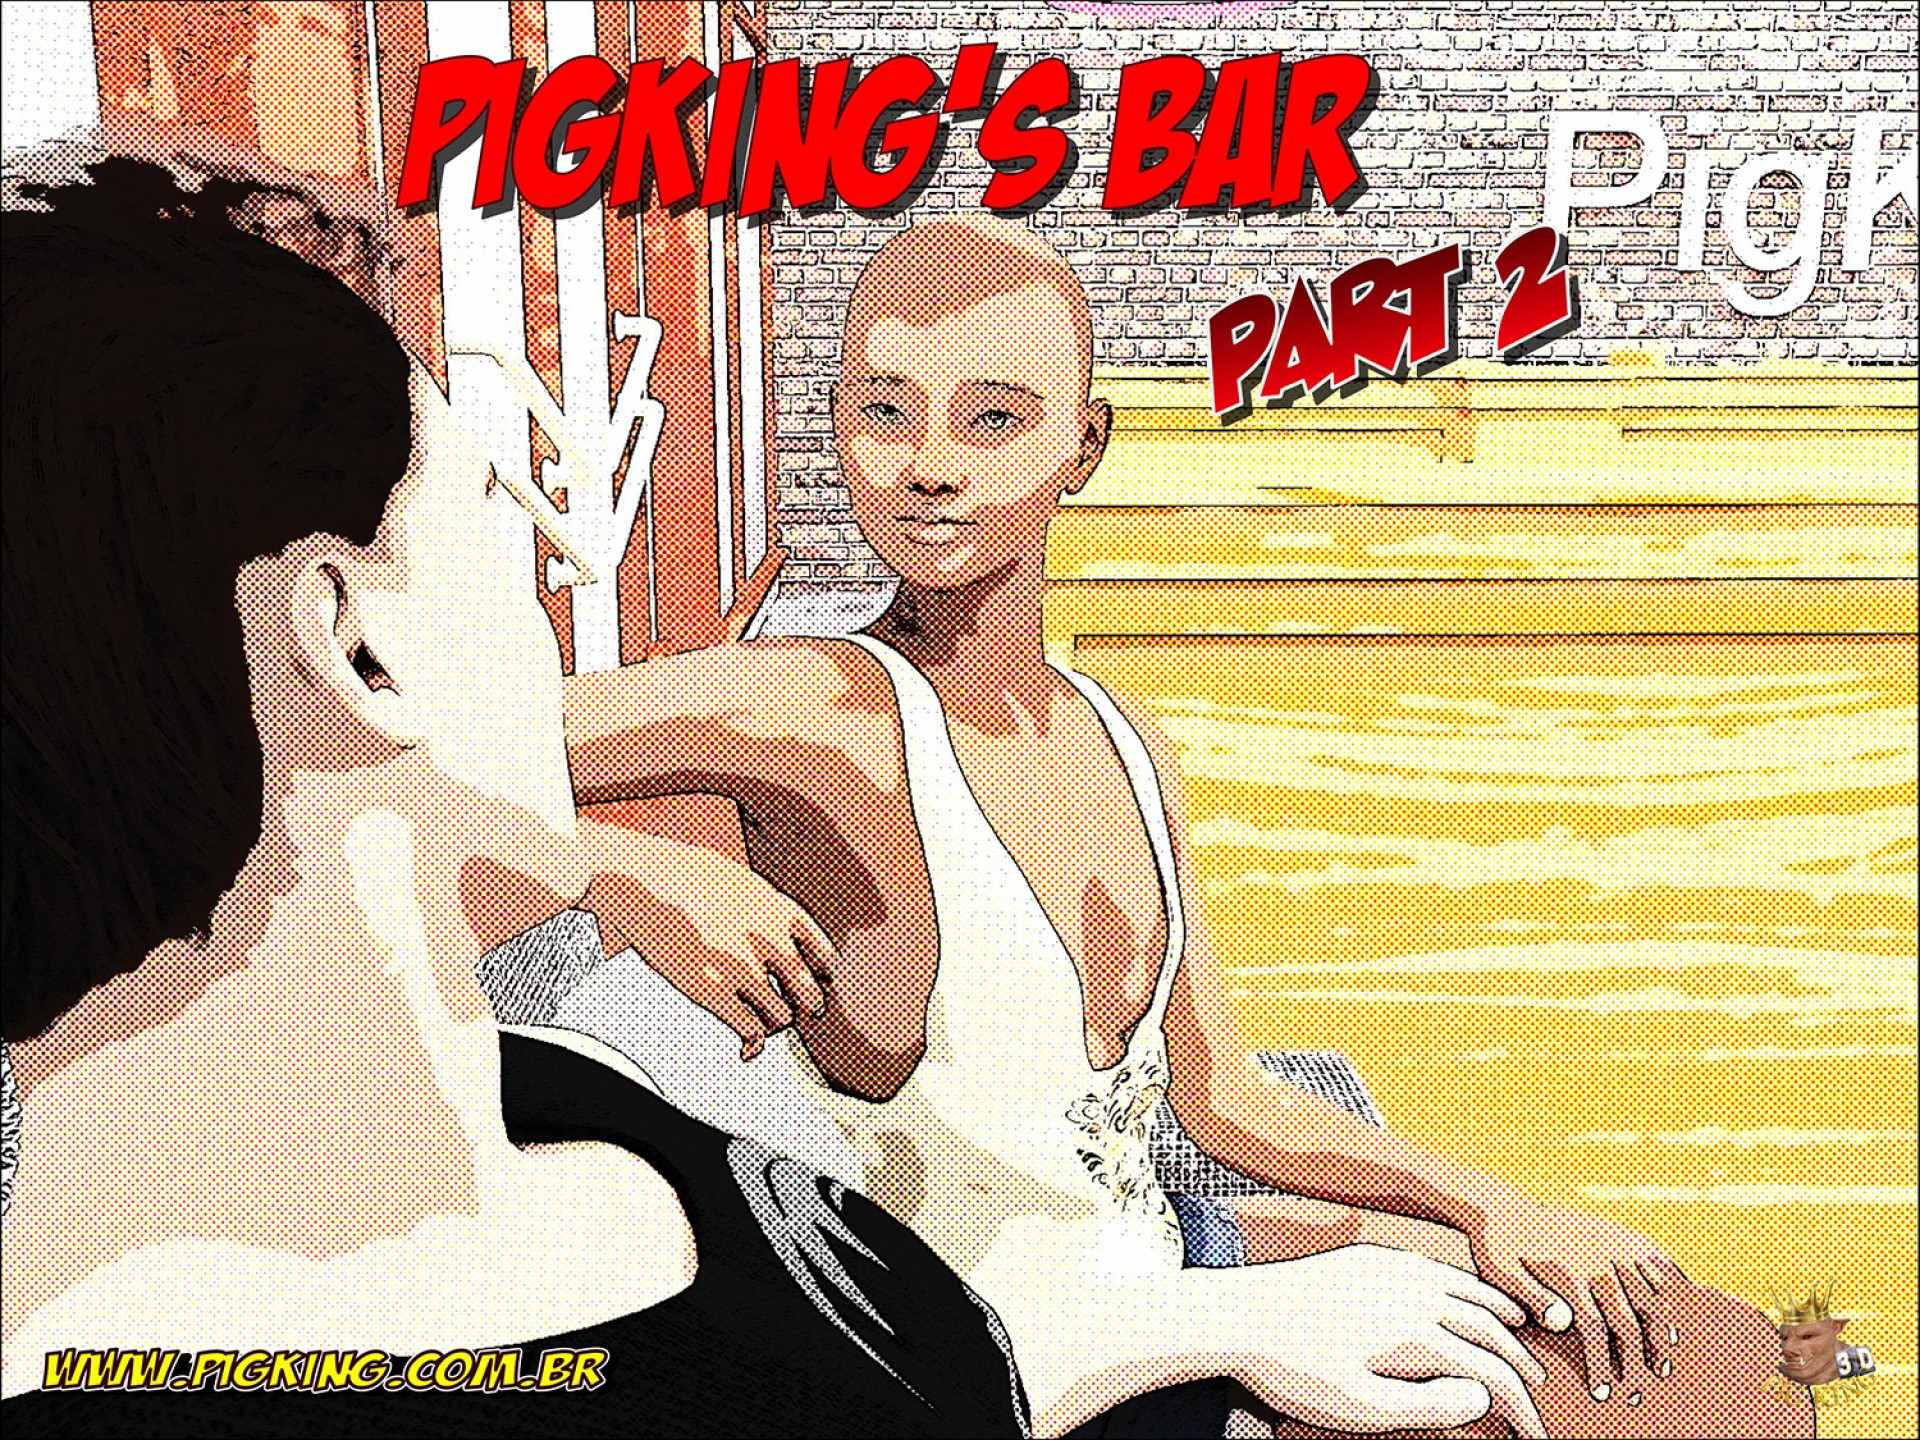 Pigkings-Bar-1.jpg